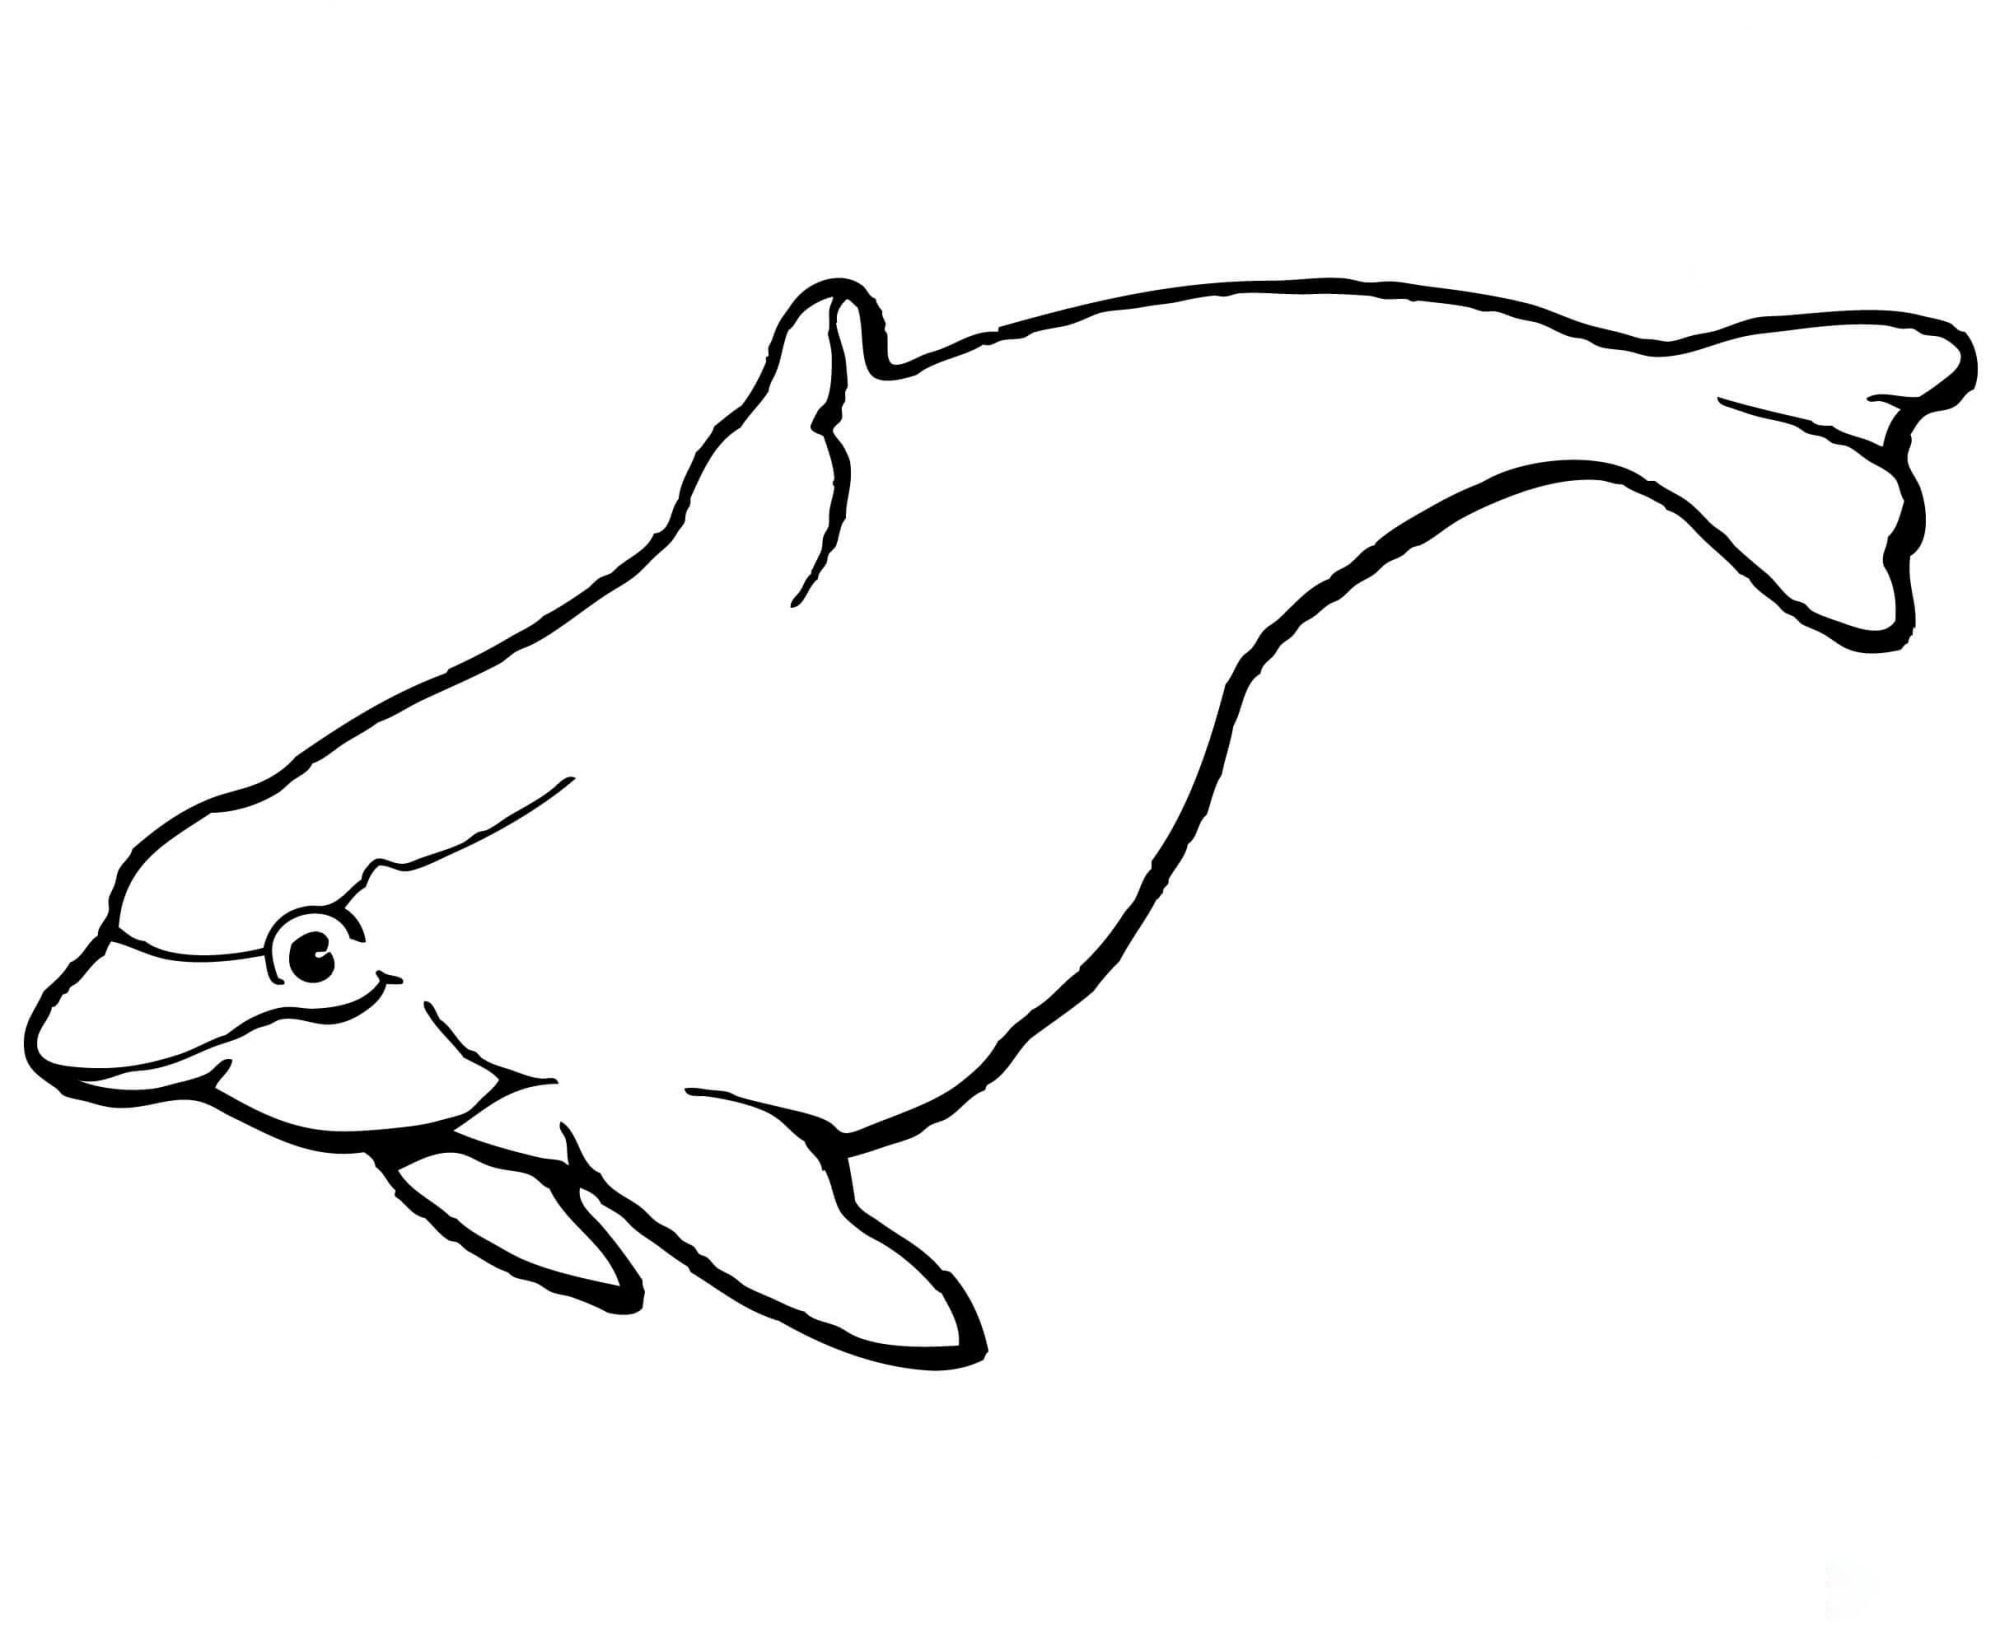 O golfinho boto tem uma cabeça bulbosa e um corpo em forma de torpedo do Dolphin